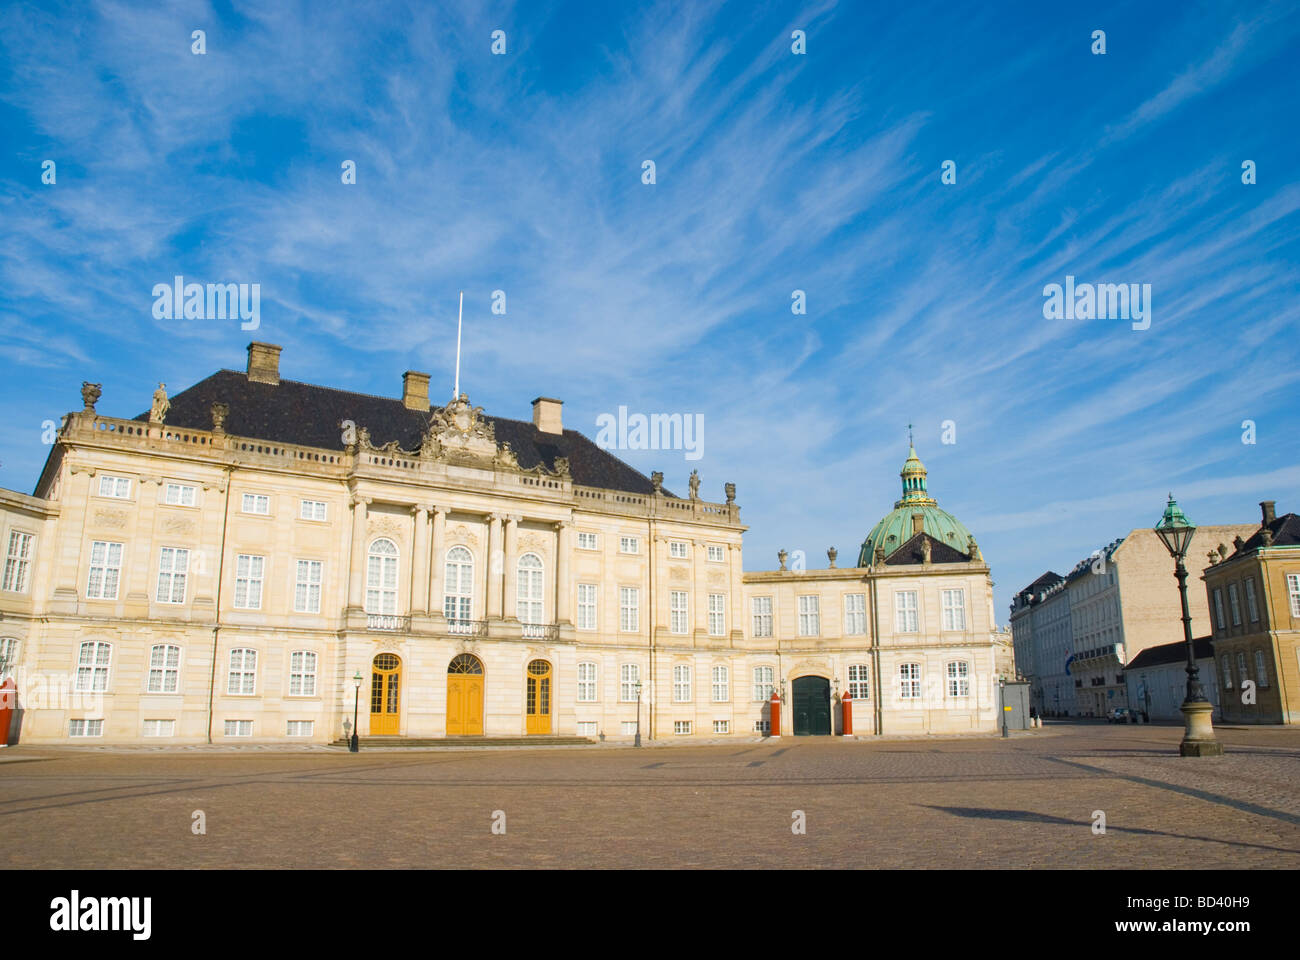 Amalienborg slottet castle in central Copenhagen Denmark Europe Stock Photo